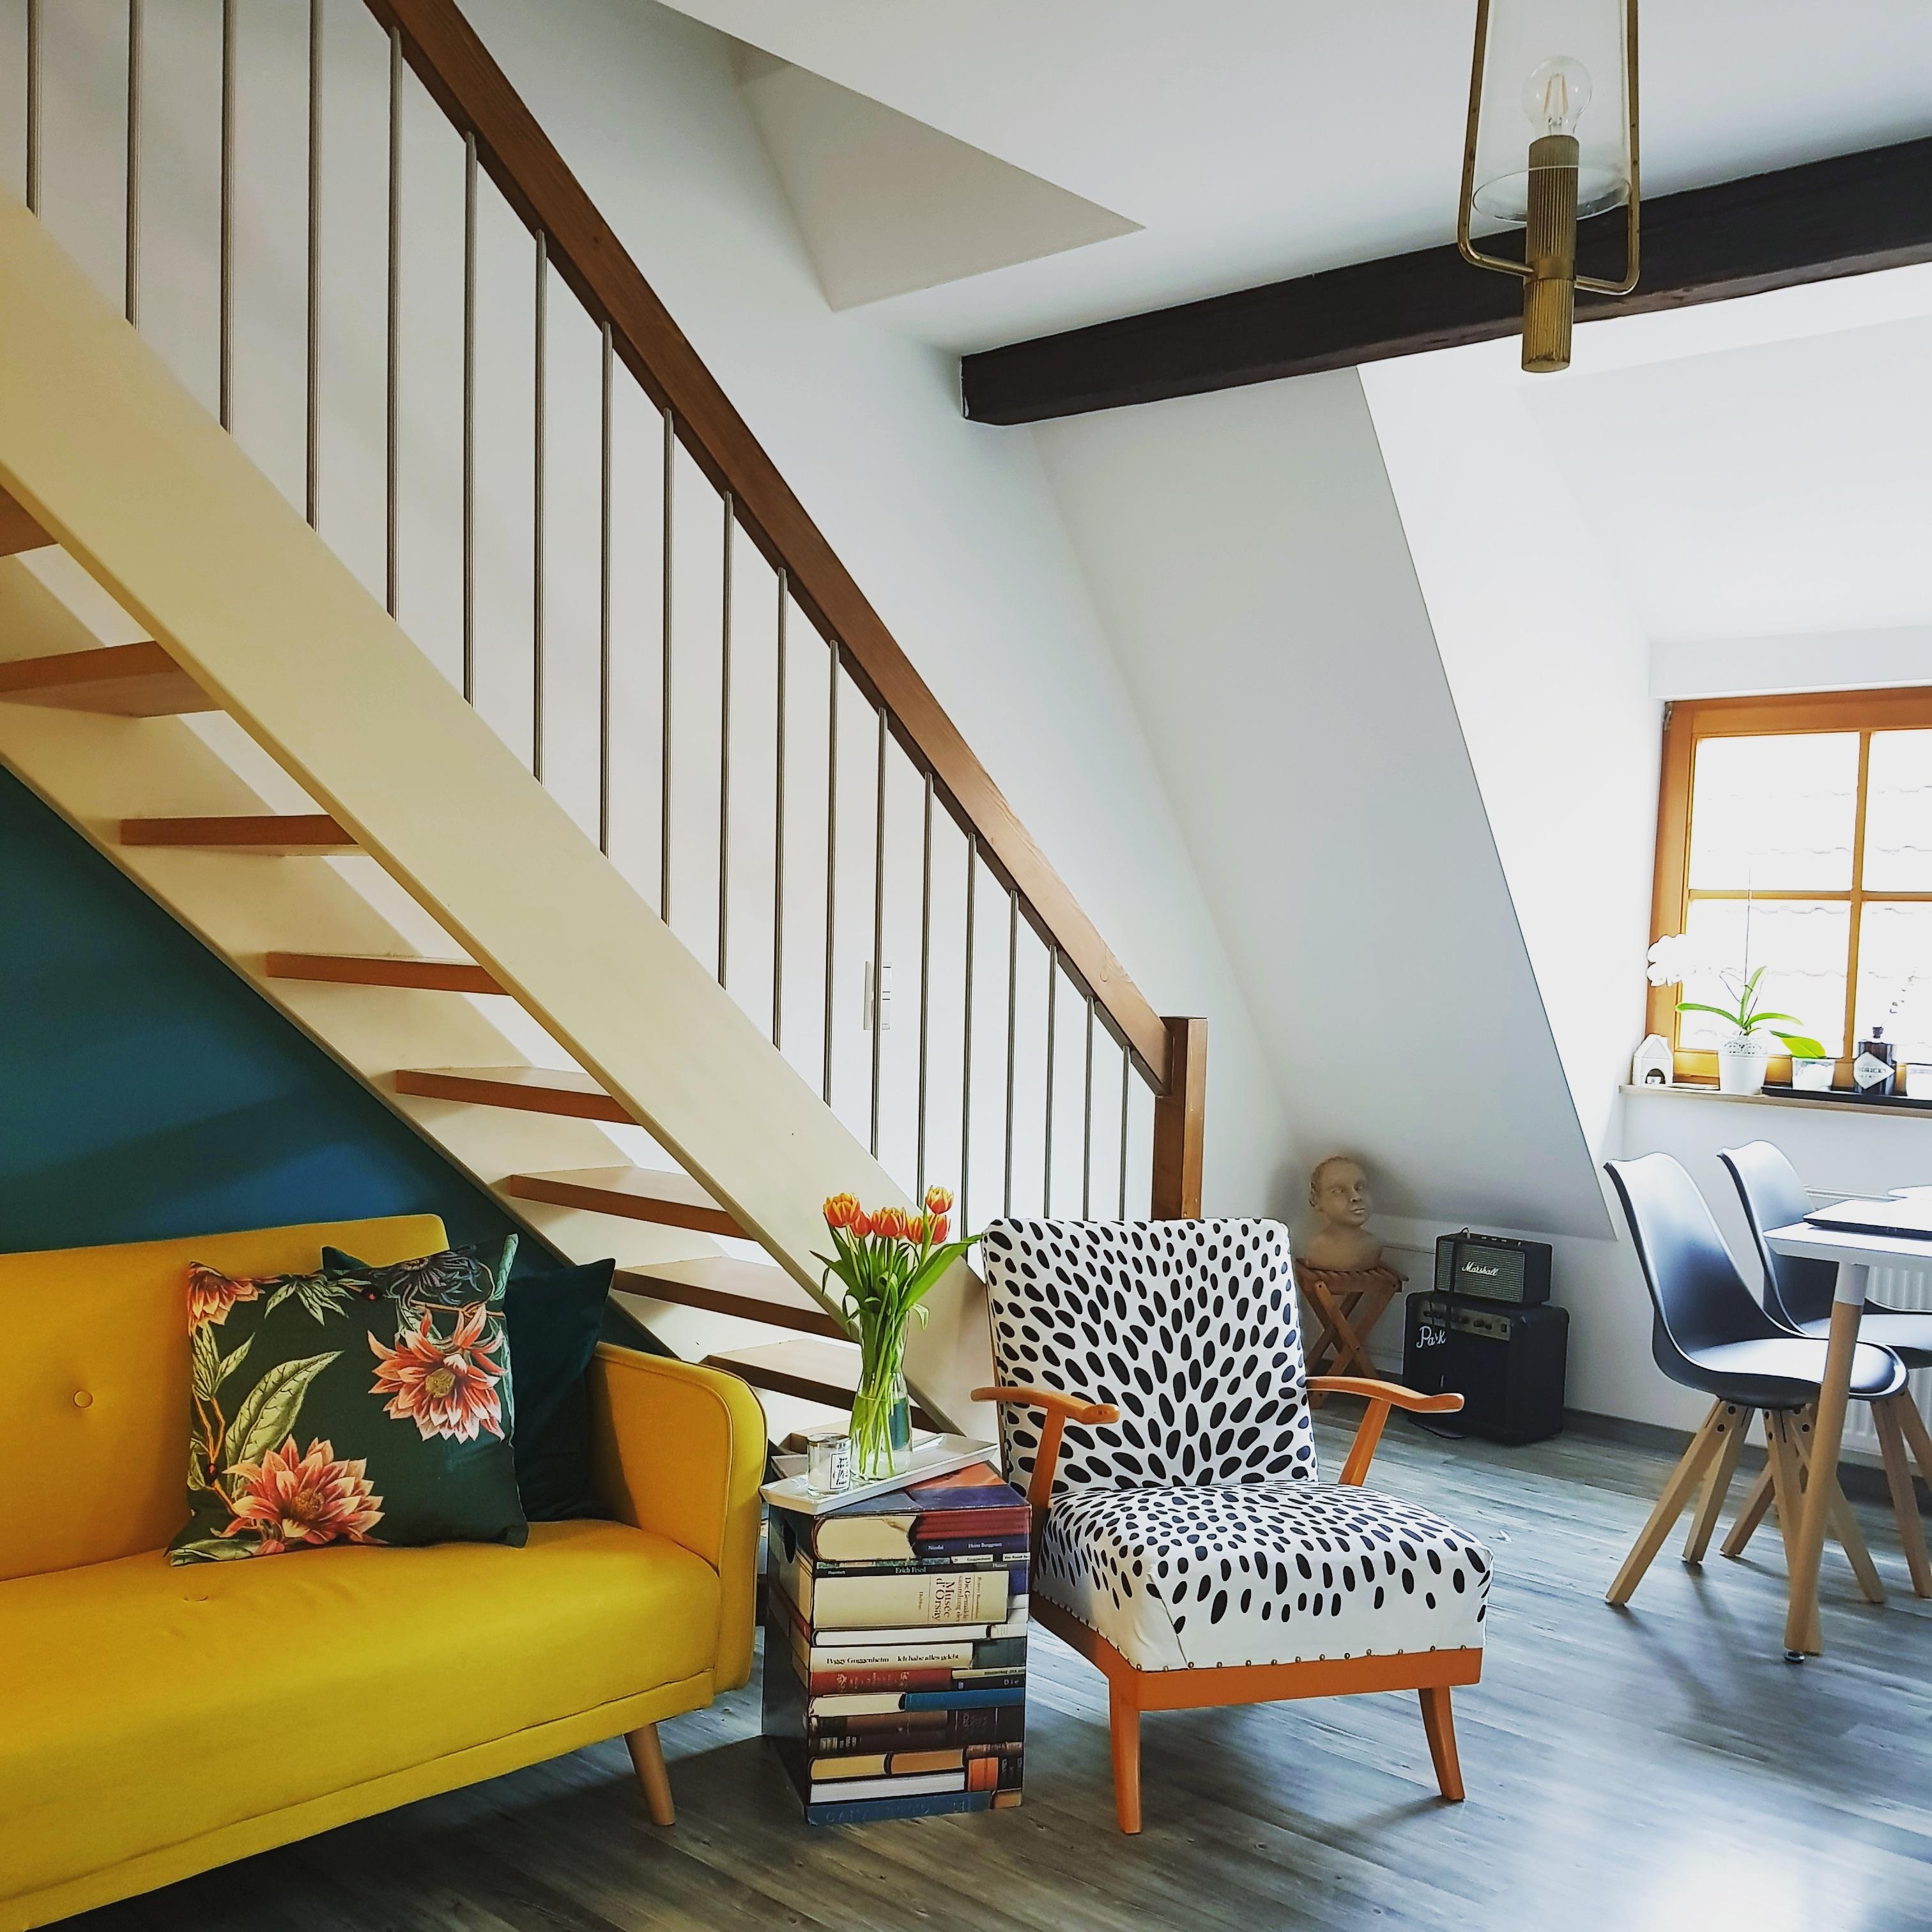 #skandistyle #couch #senfgelb #gold #grün #wohnzimmer #living #home #interior